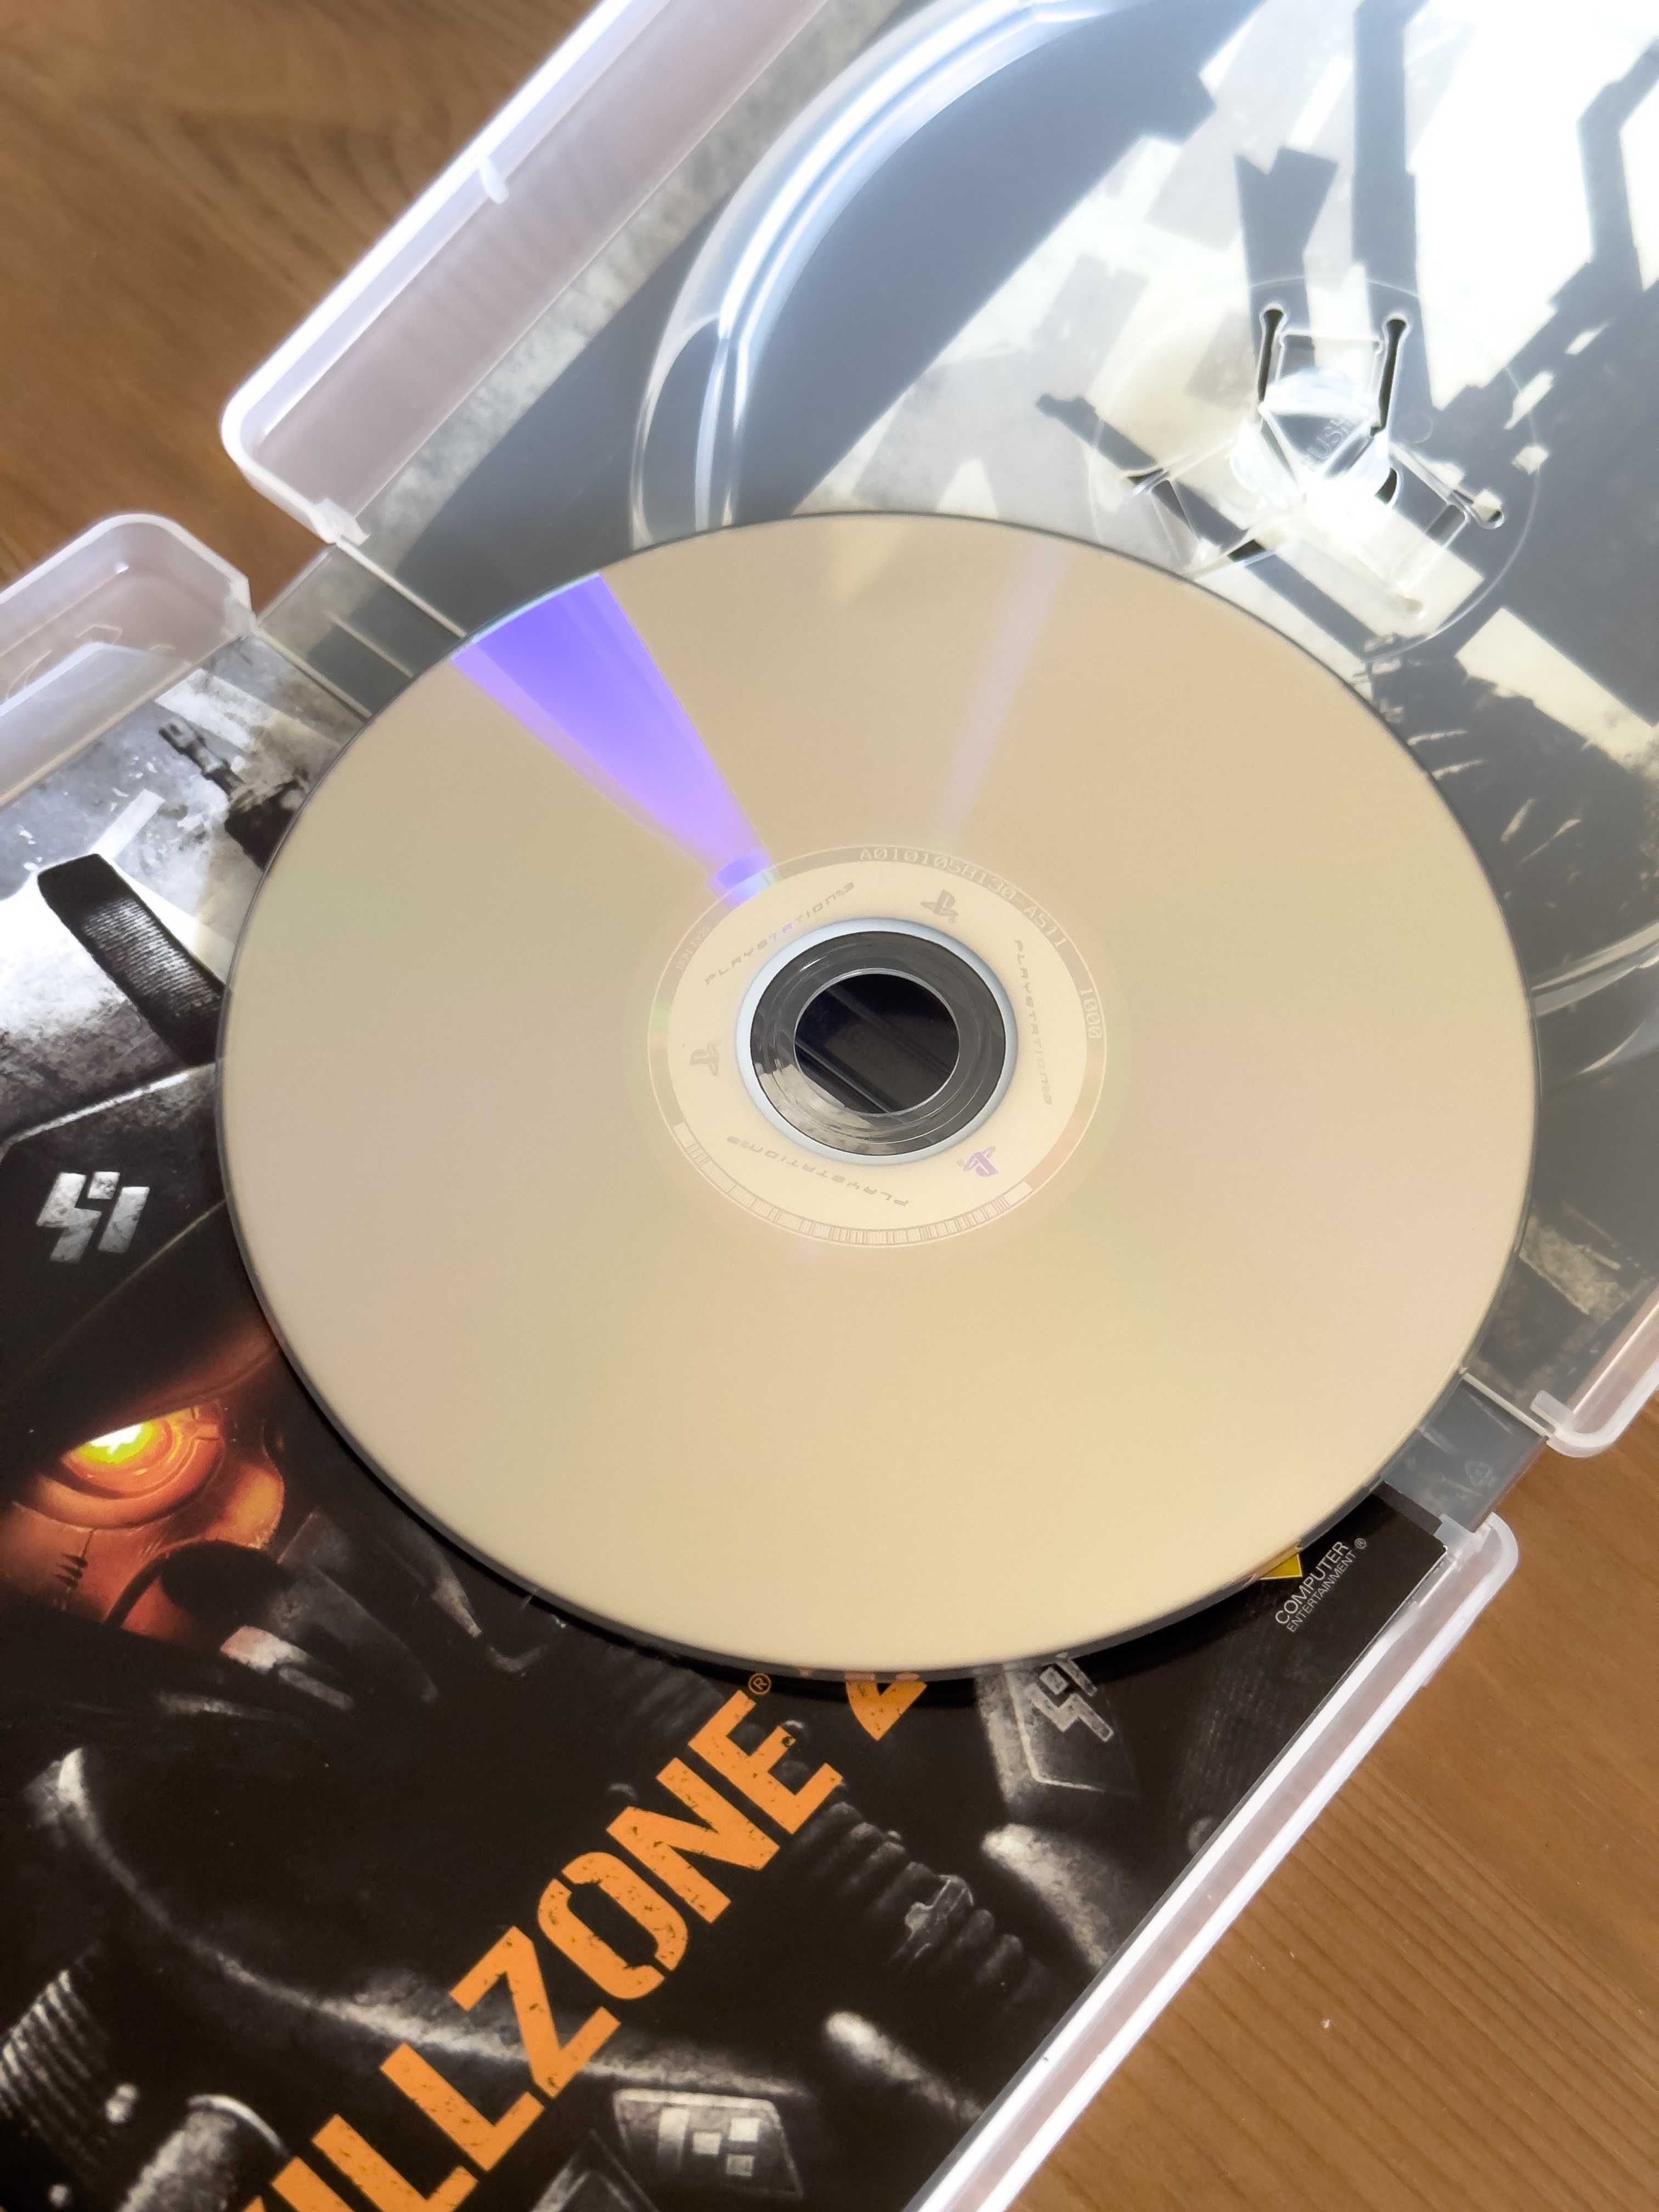 Killzone 2 | PlayStation 3 (PS3)